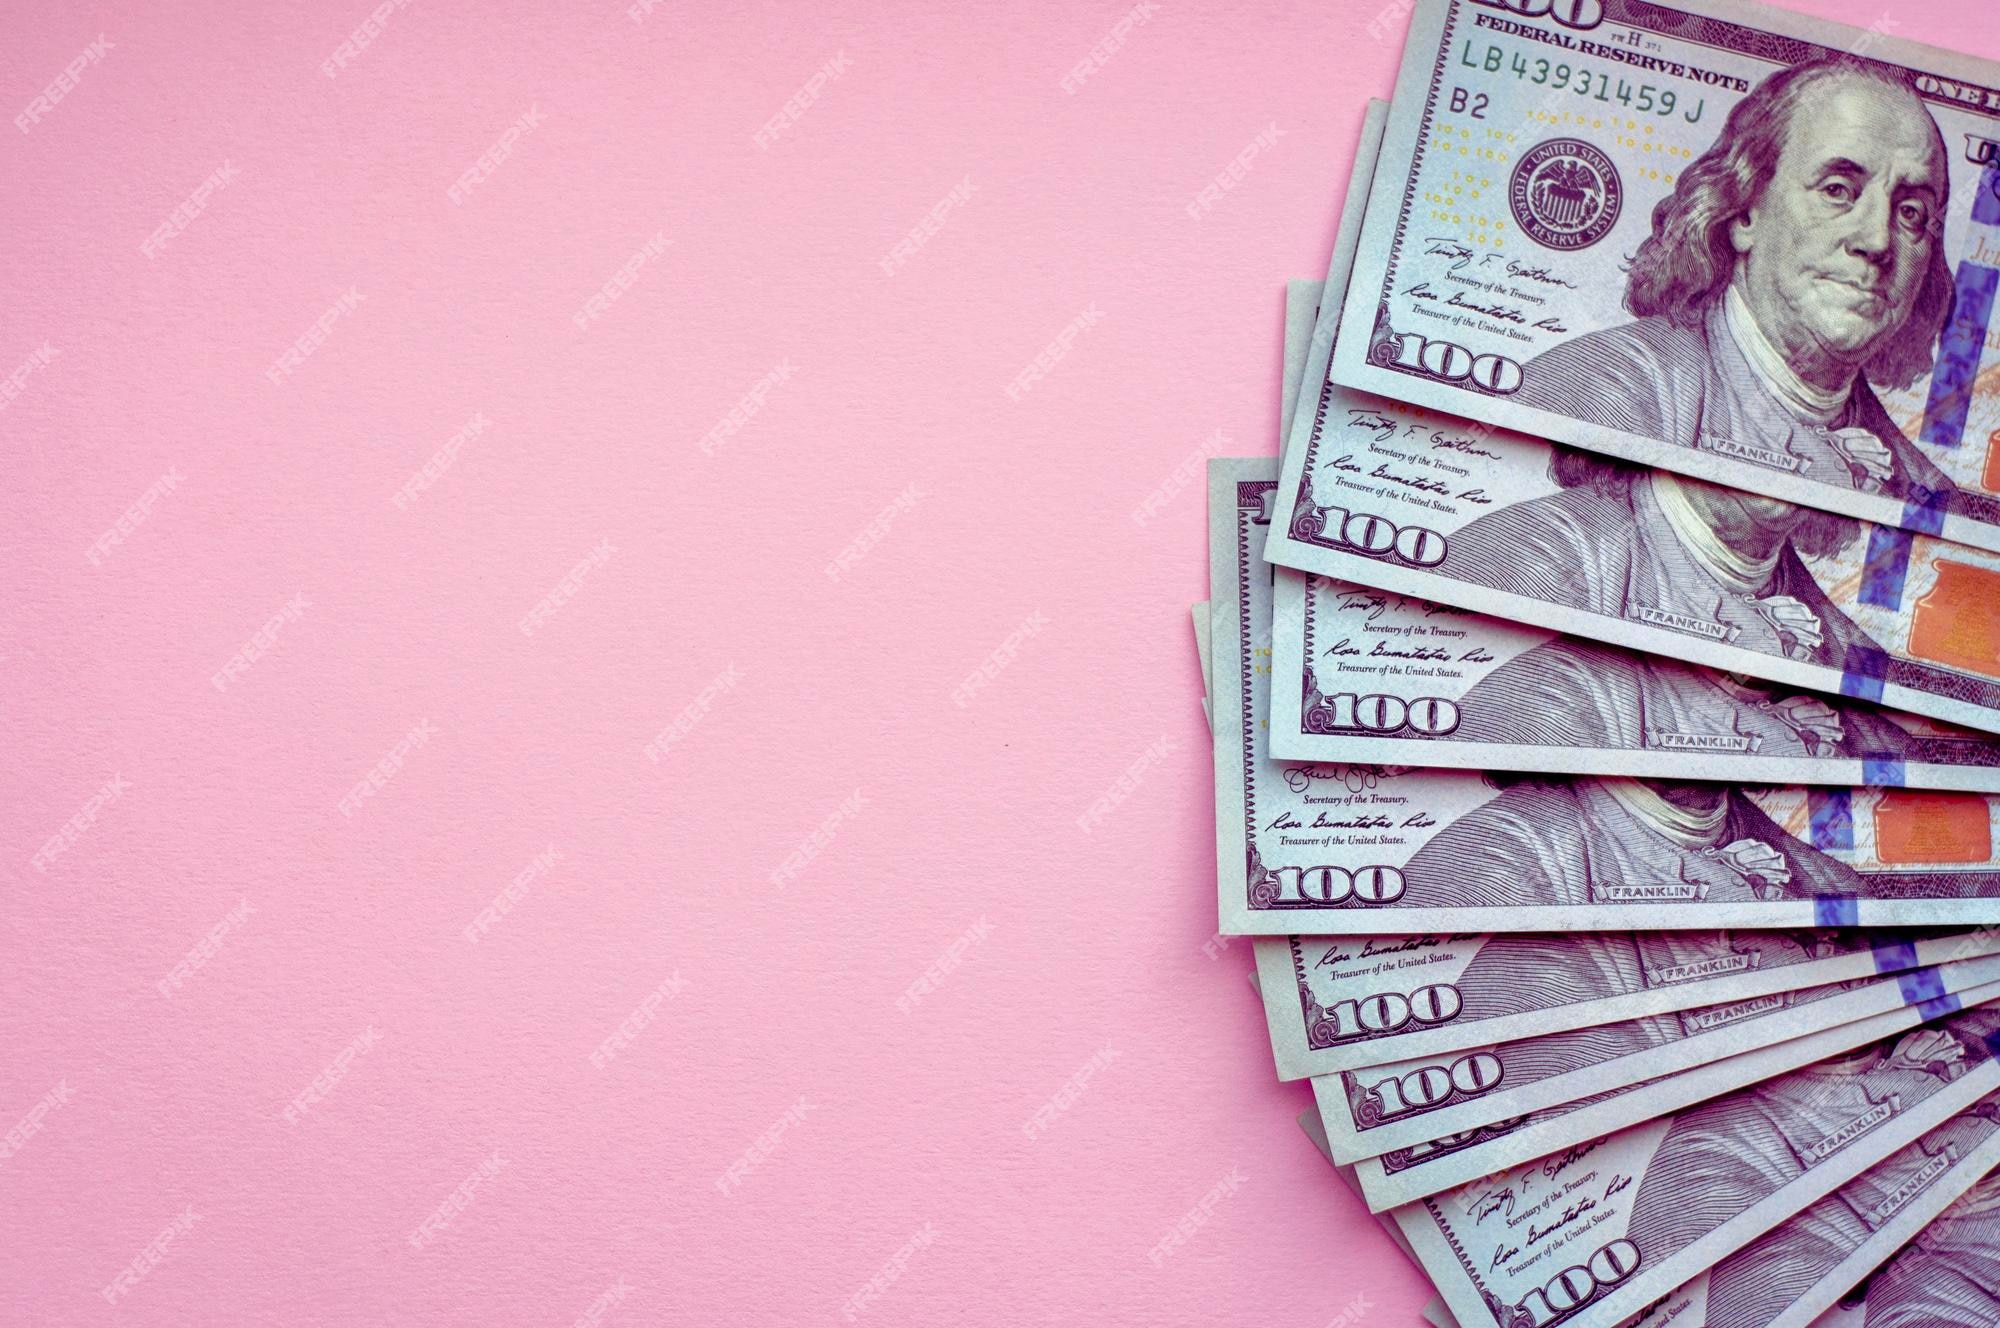 Hình nền tiền màu hồng là sự kết hợp độc đáo giữa sắc hồng nữ tính và yếu tố tiền tệ. Nếu bạn muốn tạo ra một phong cách riêng biệt cho màn hình của mình, thì hình nền này sẽ giúp bạn thu hút sự chú ý của mọi người.